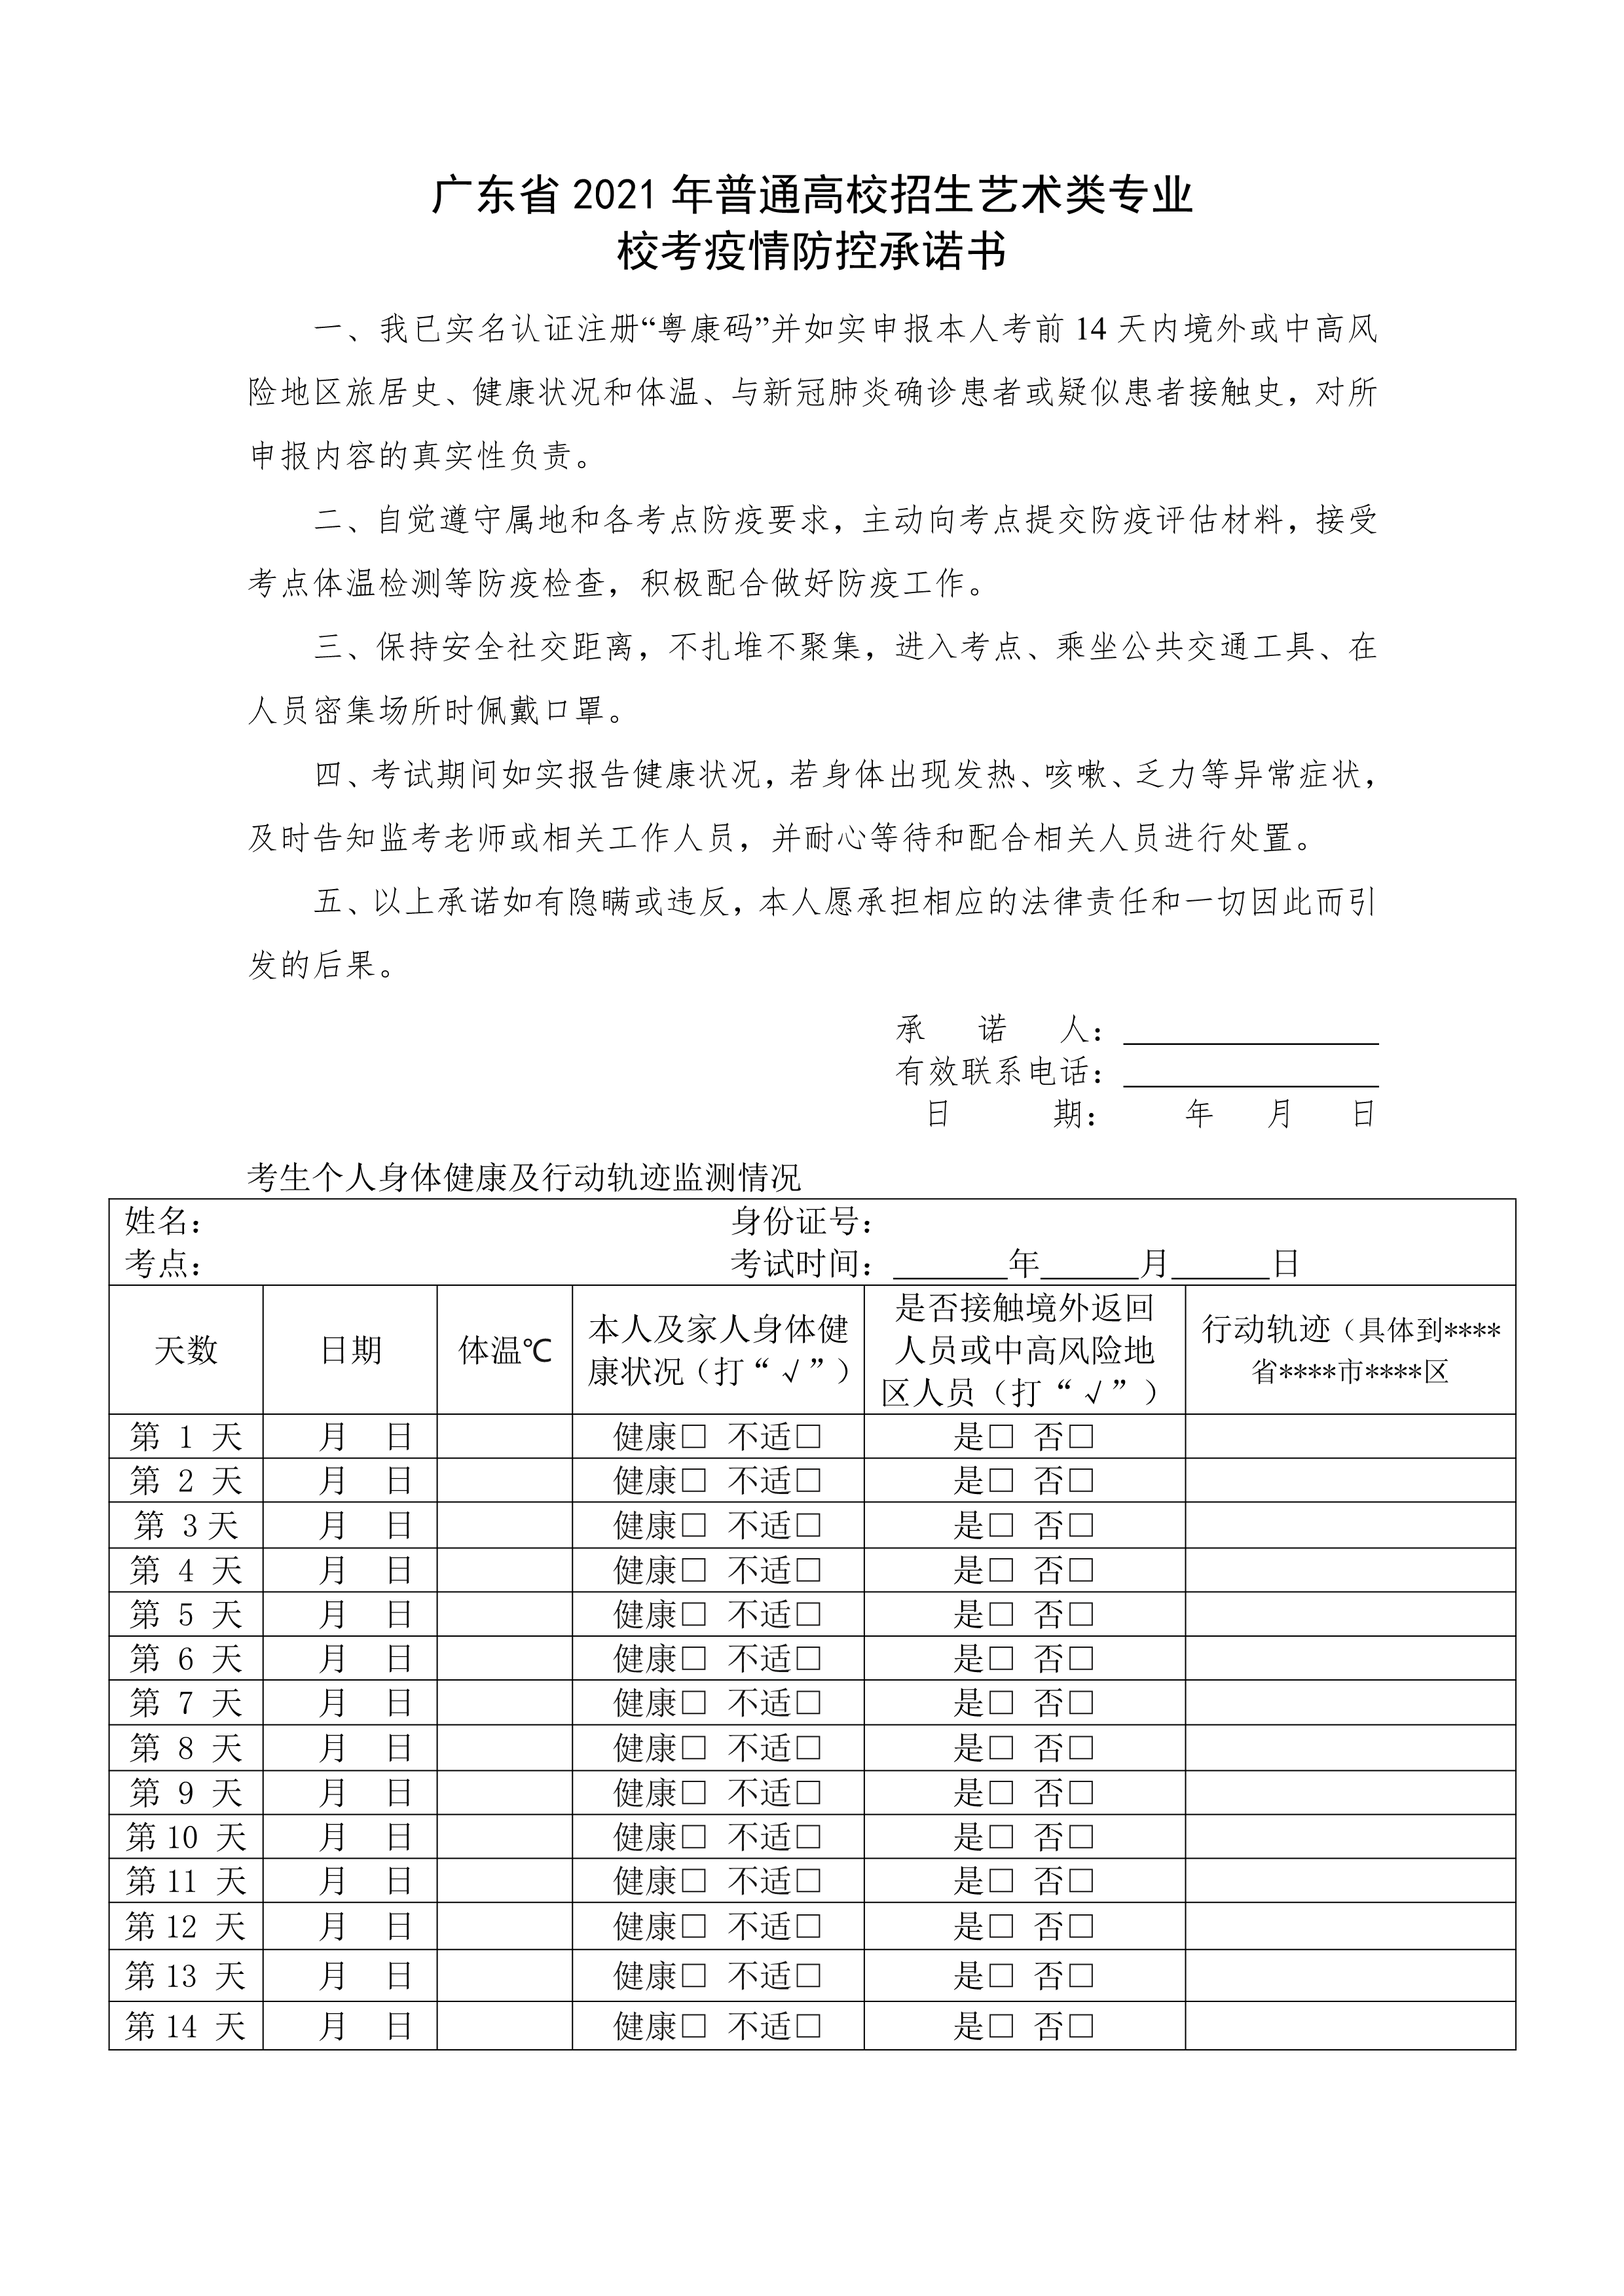 附件2：广东省2021年普通高校招生艺术类专业校考疫情防控承诺书_1.png